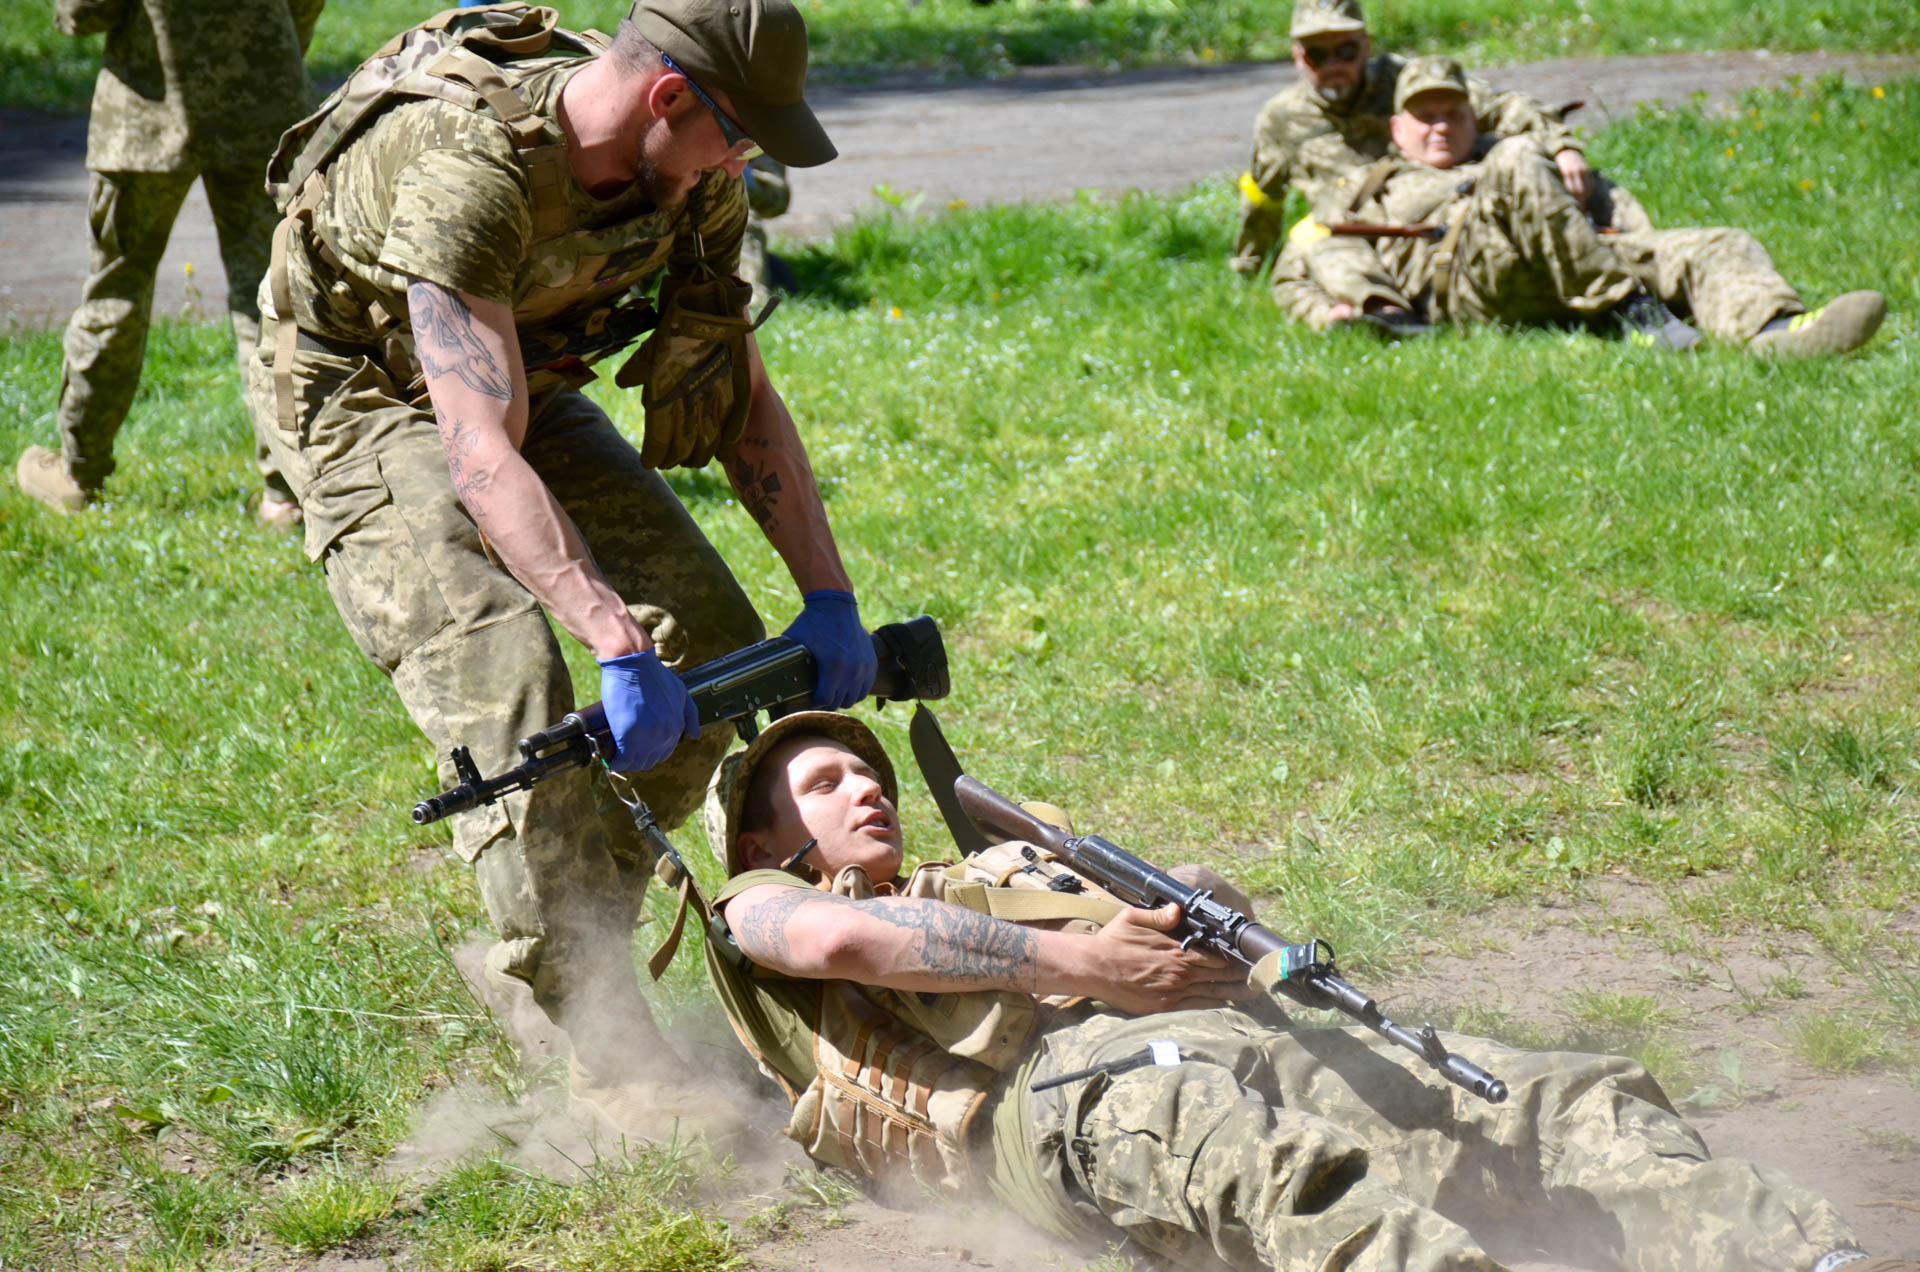 Szkolenie z medycyny taktycznej dla żołnierzy, policji i medyków